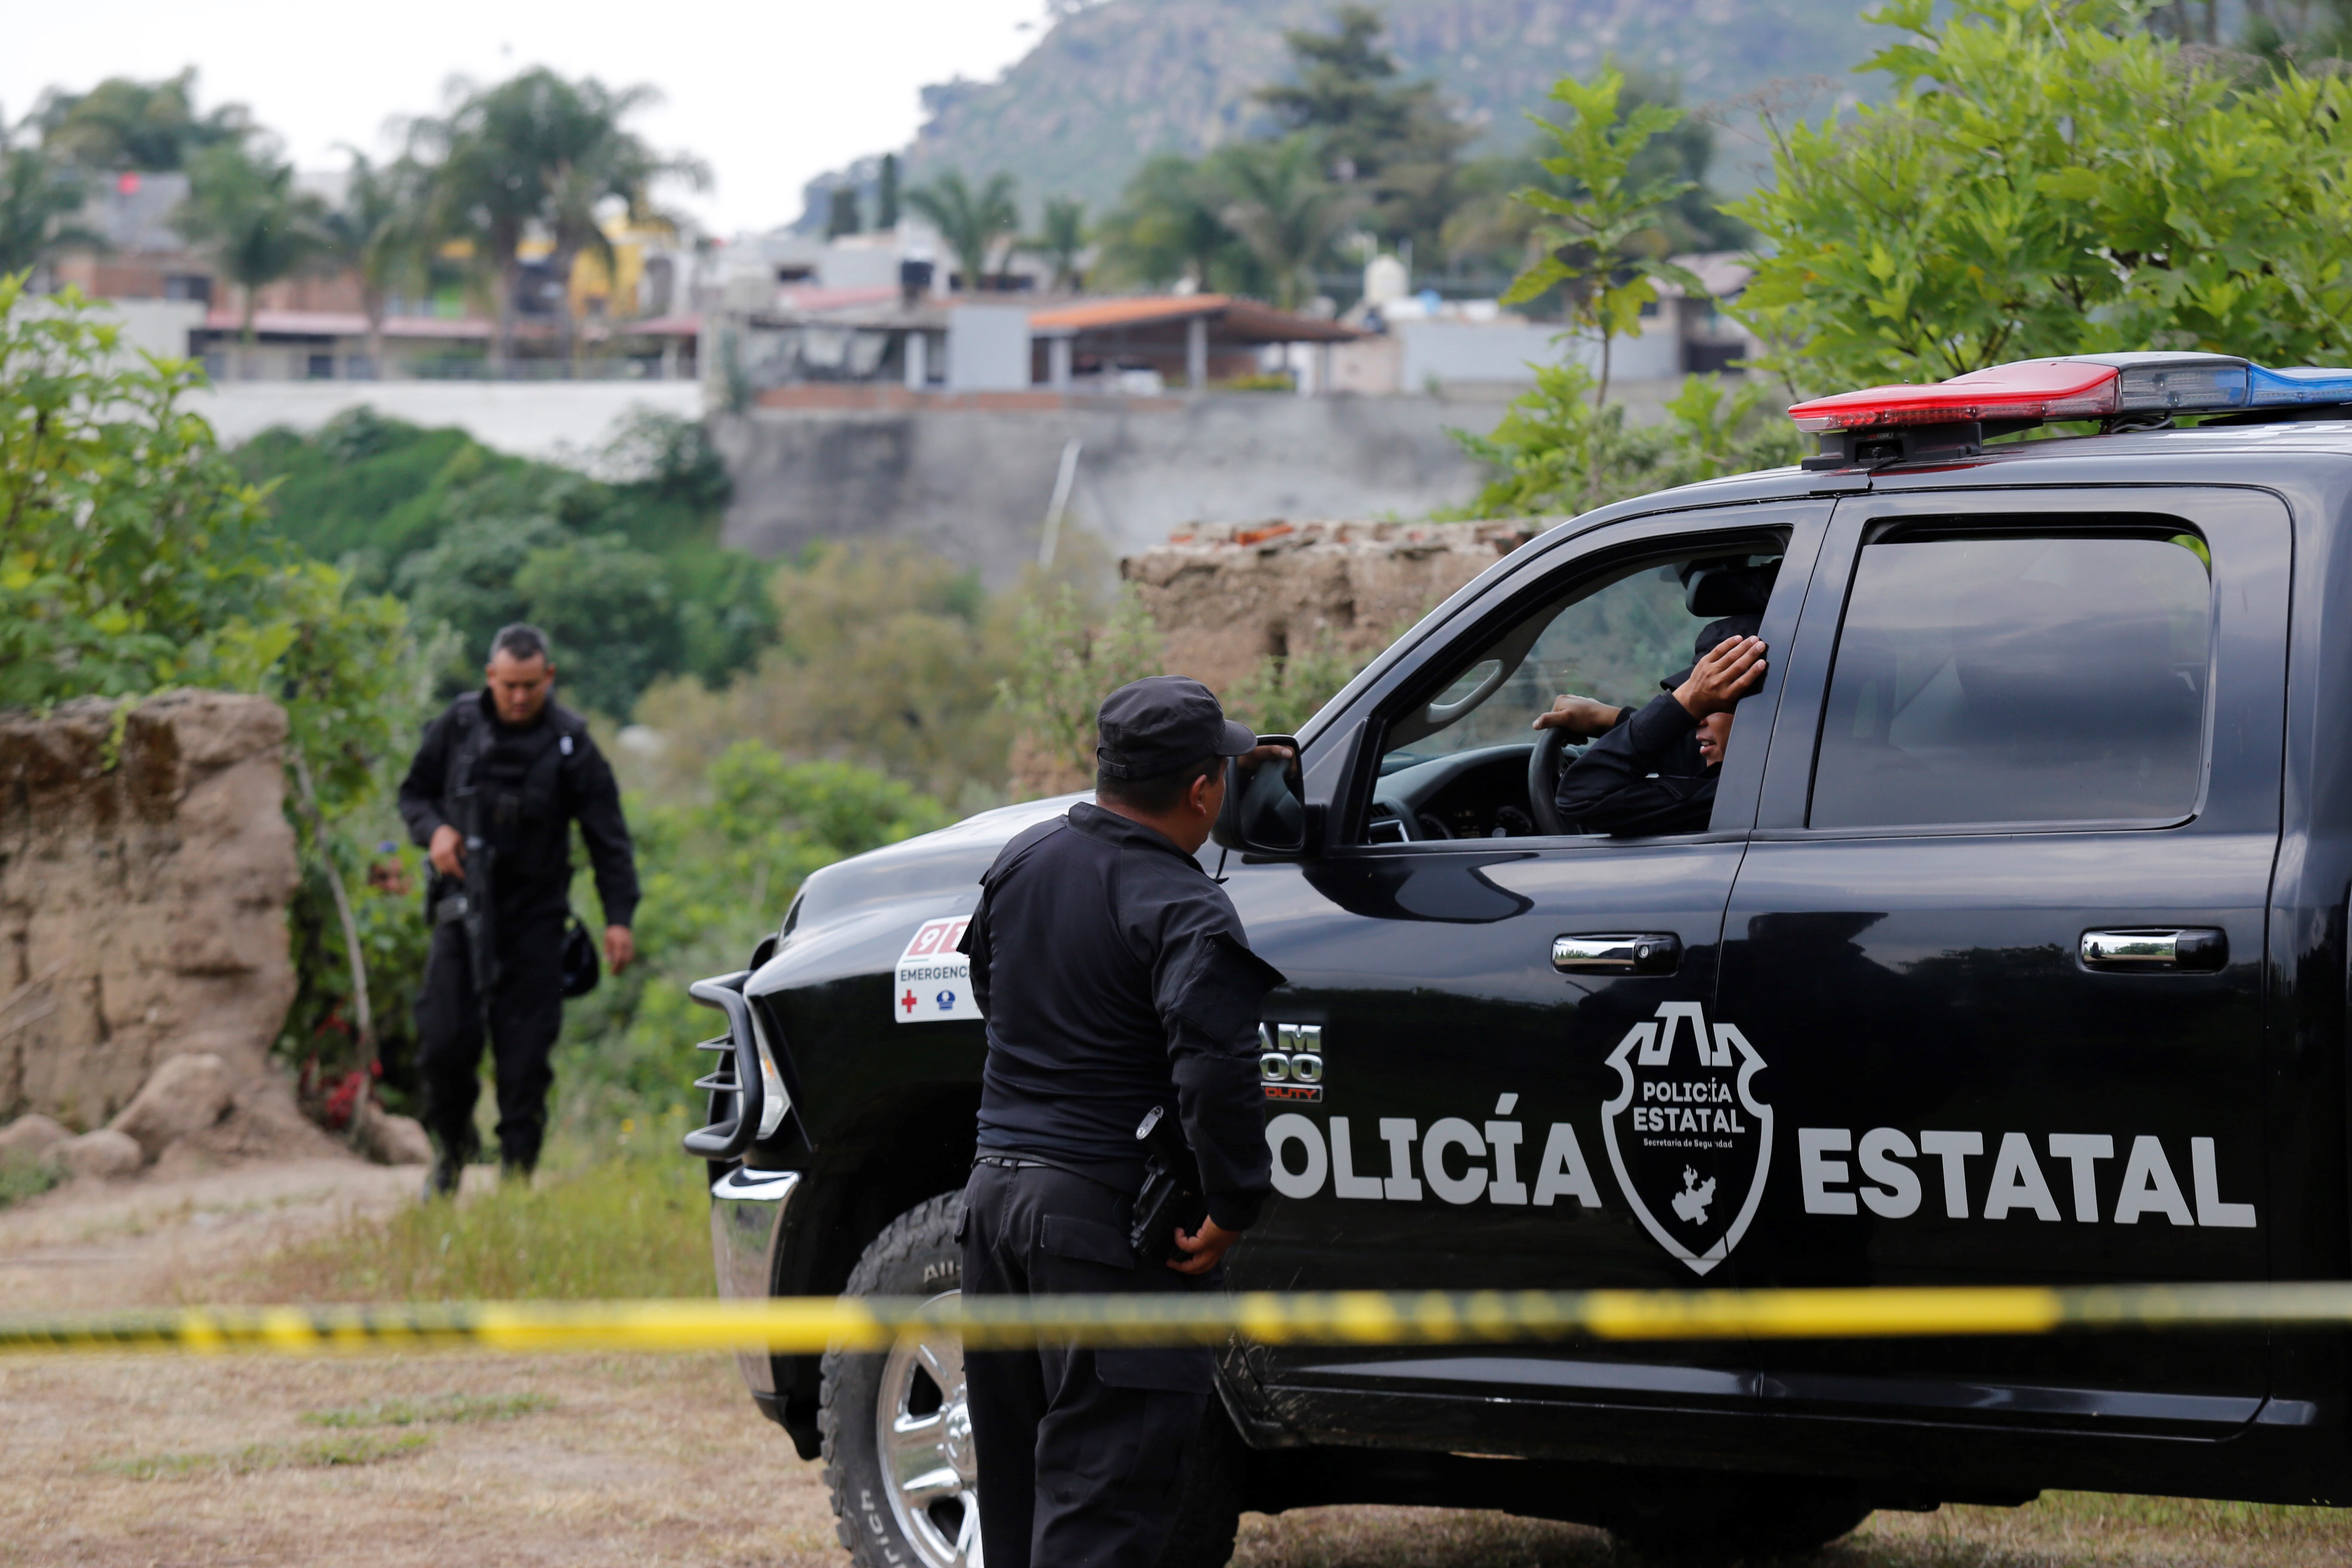 Desde diciembre de 2018, Jalisco ha registrado más desapariciones que en cualquier otra región de México. (EFE)
